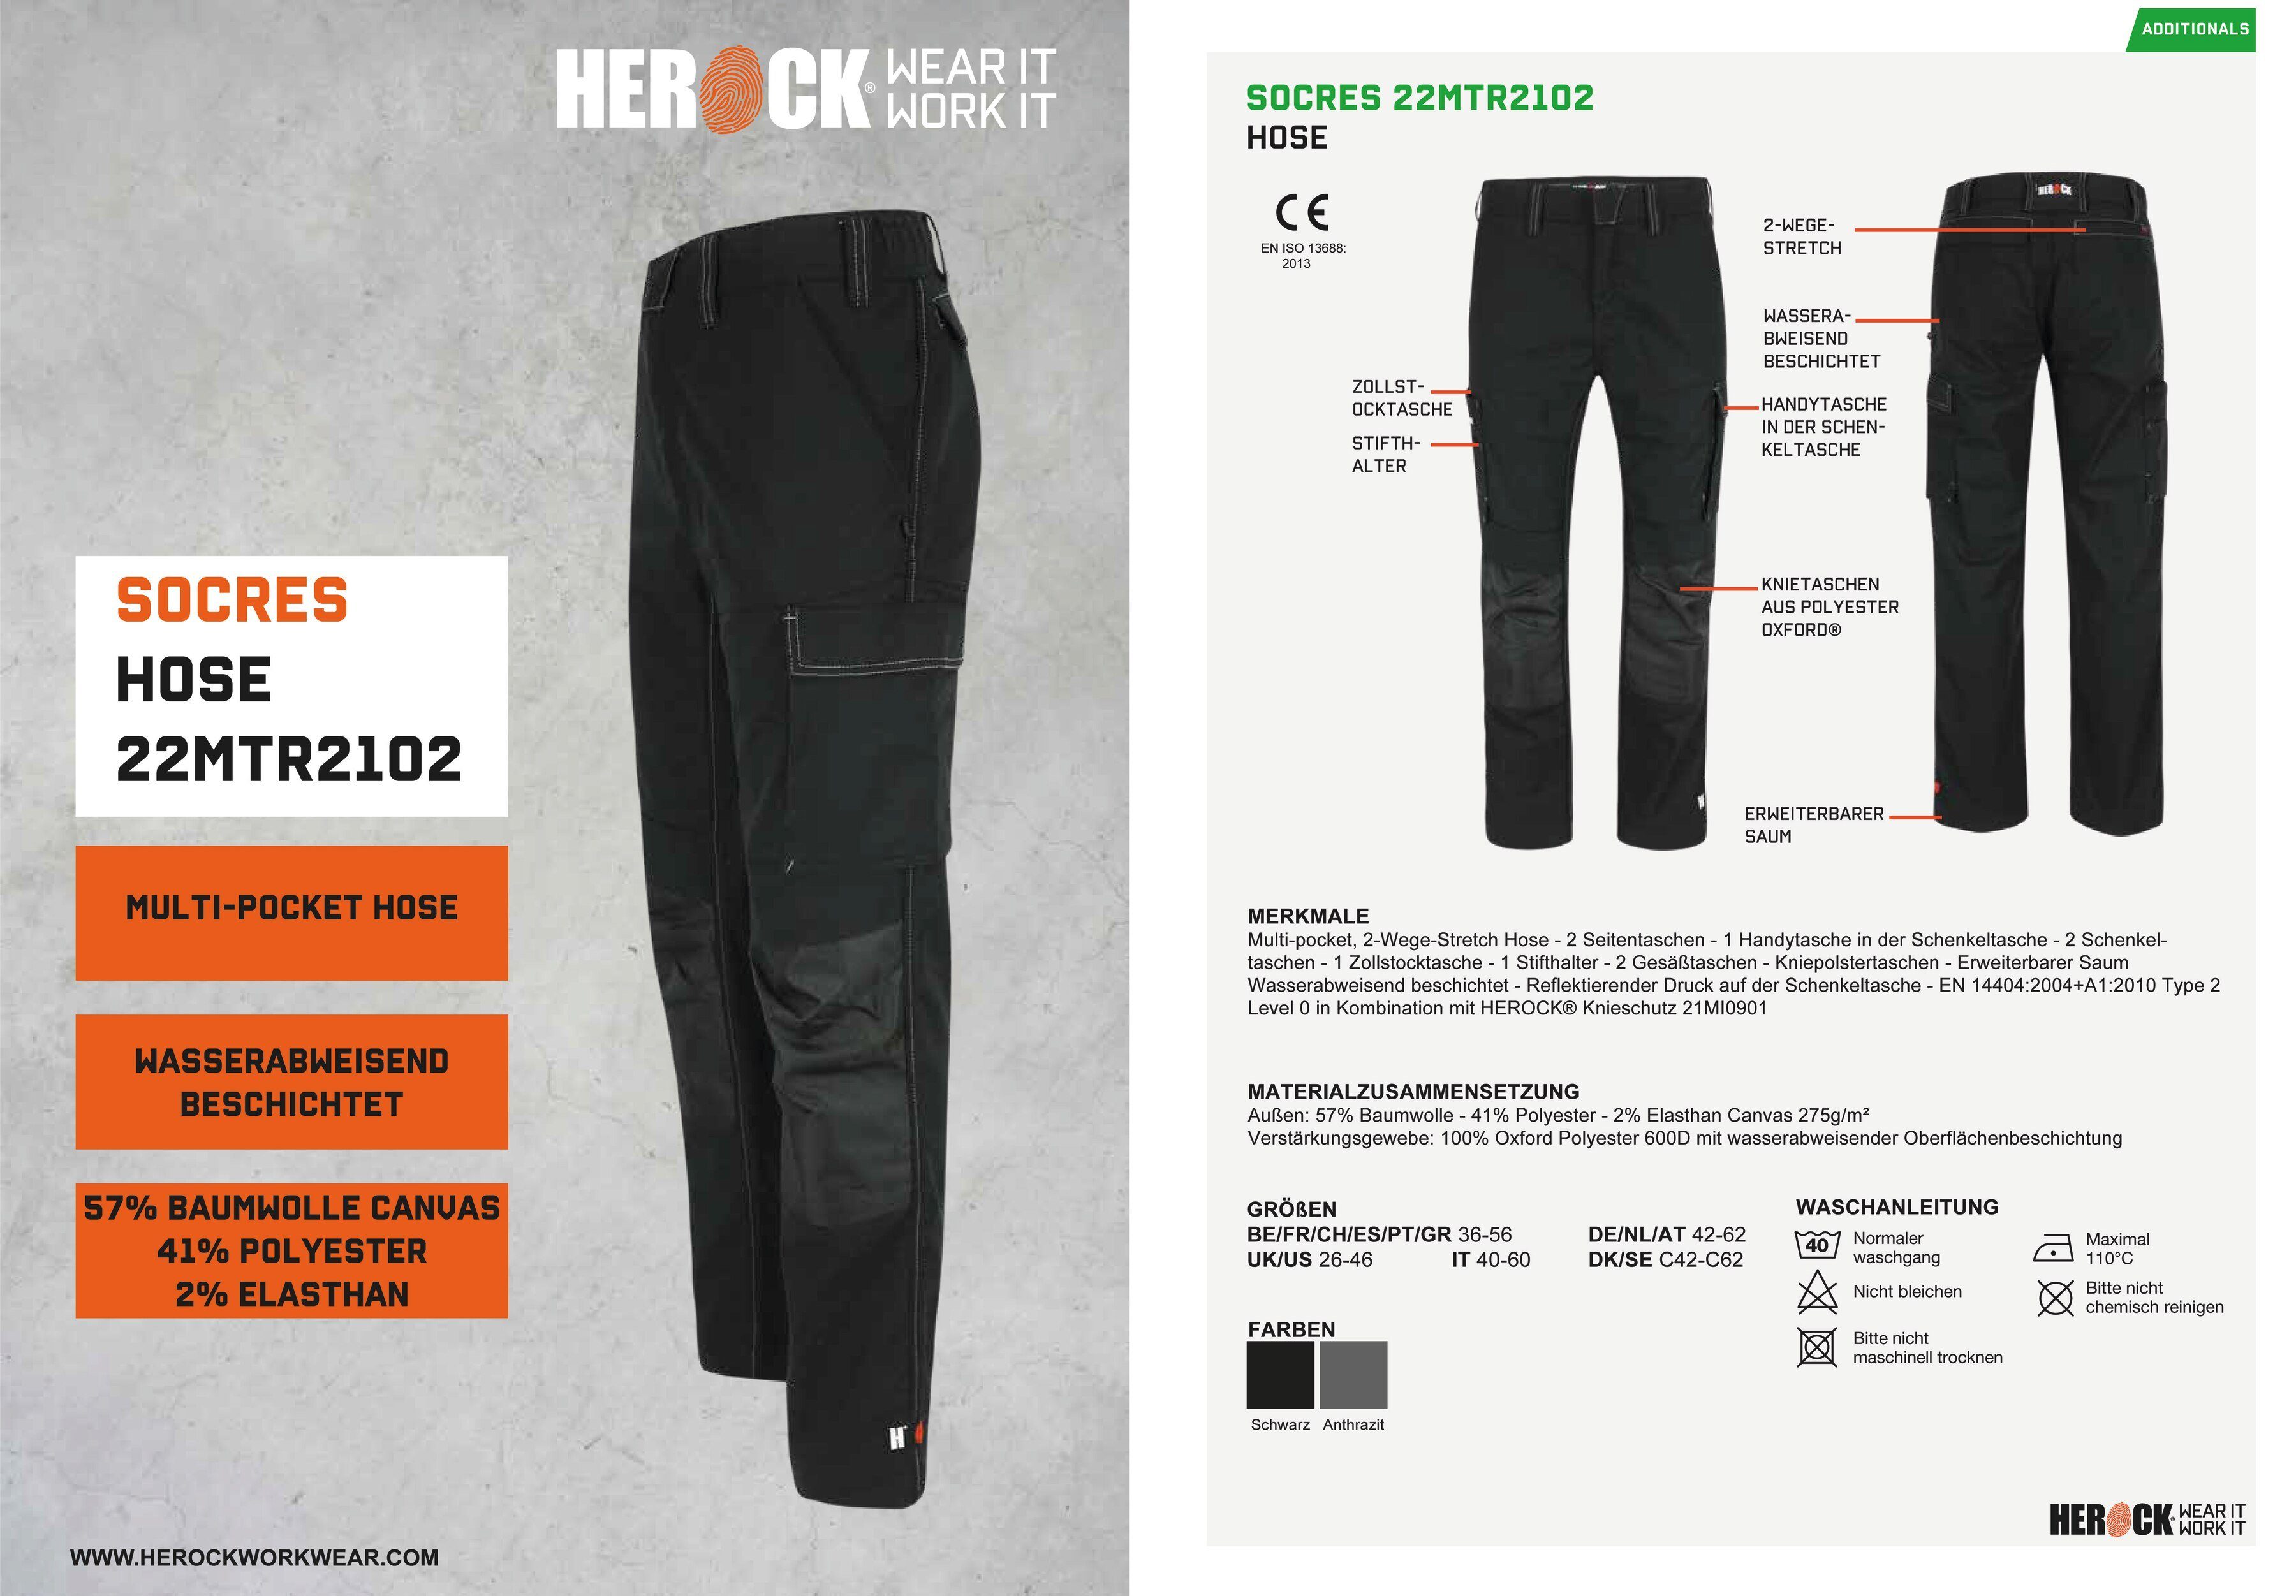 Herock Arbeitshose SOCRES Multi-pocket, 2-Wege-Stretch, schwarz wasserabweisend bequem beschichtet